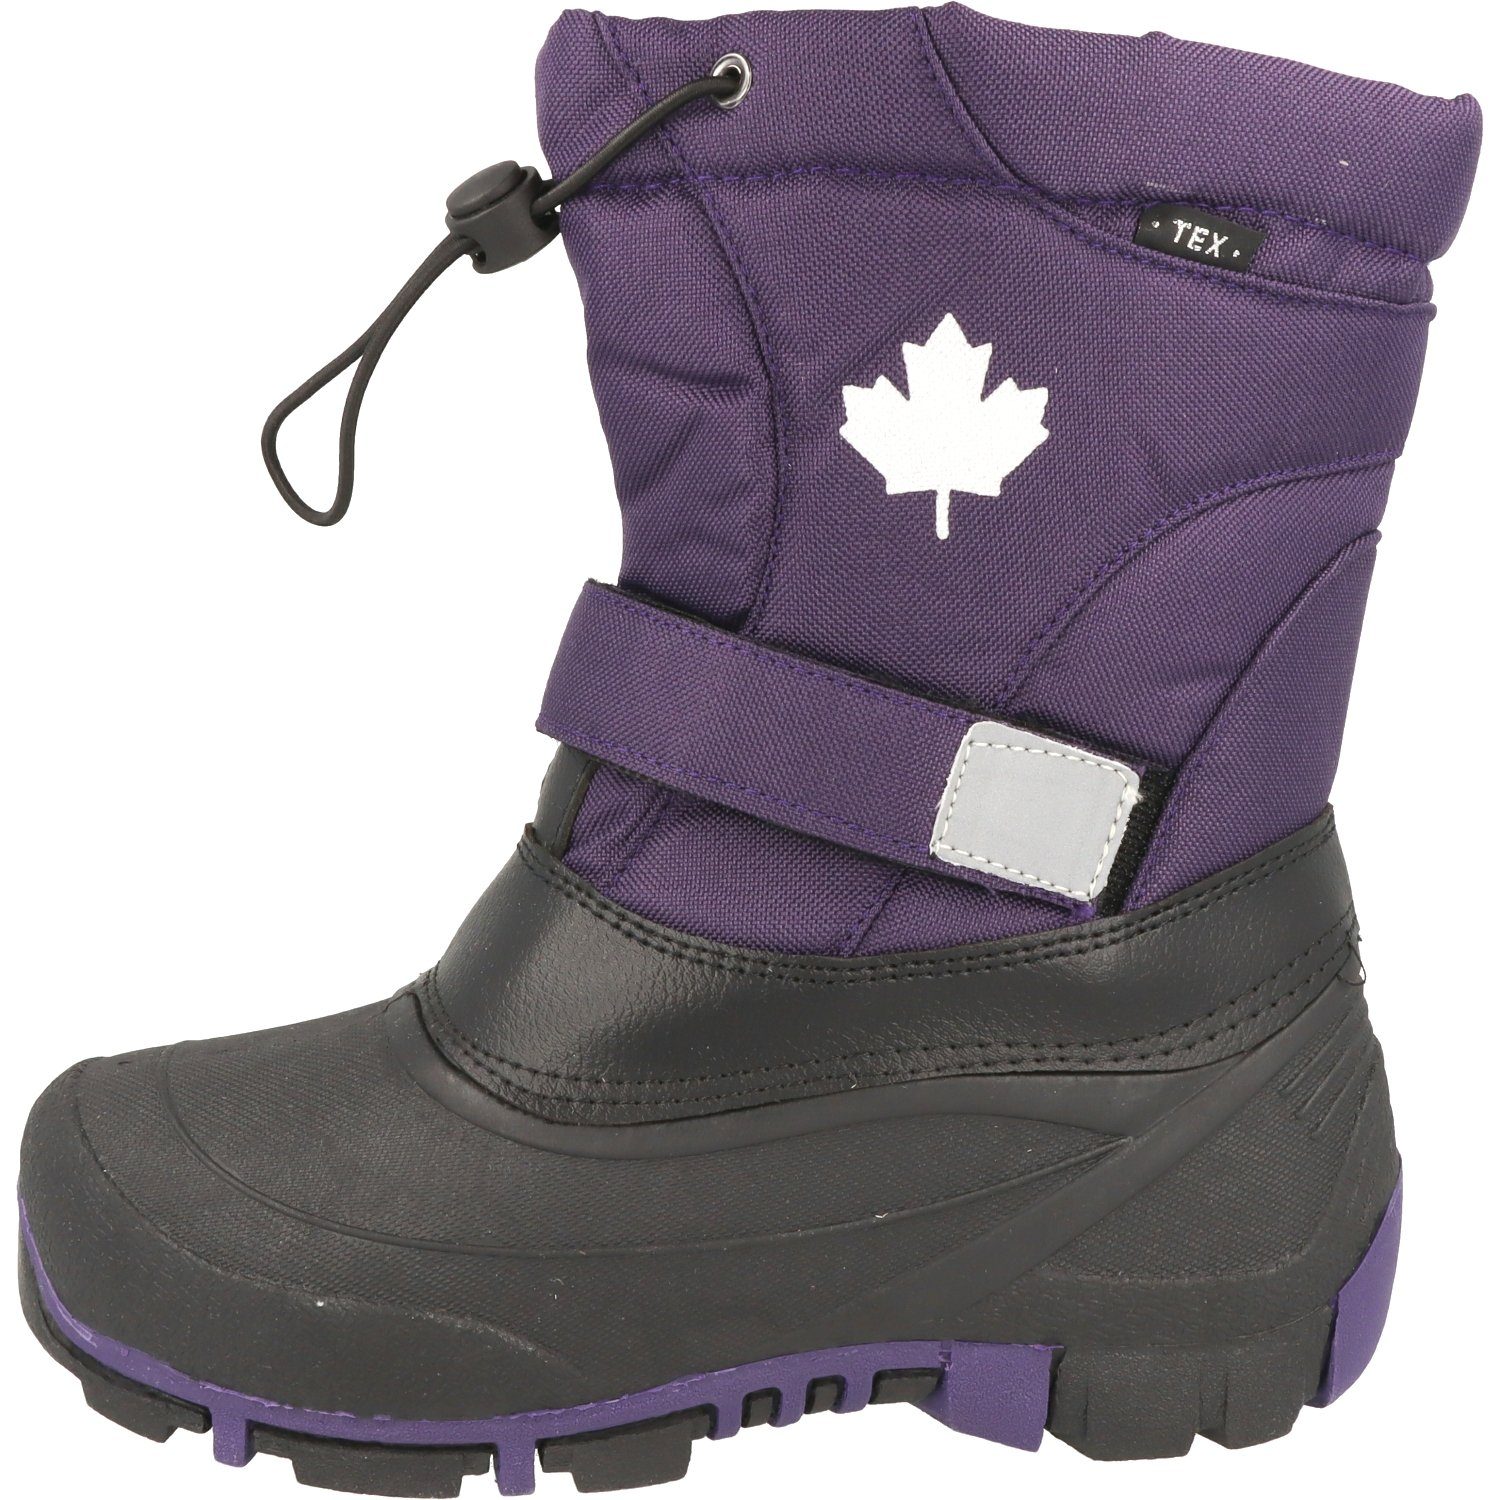 Stiefel Schnee Mädchen 467-185 CANADIANS Lilac TEX Winterboots Snow Wasserabweisend Boots Winter